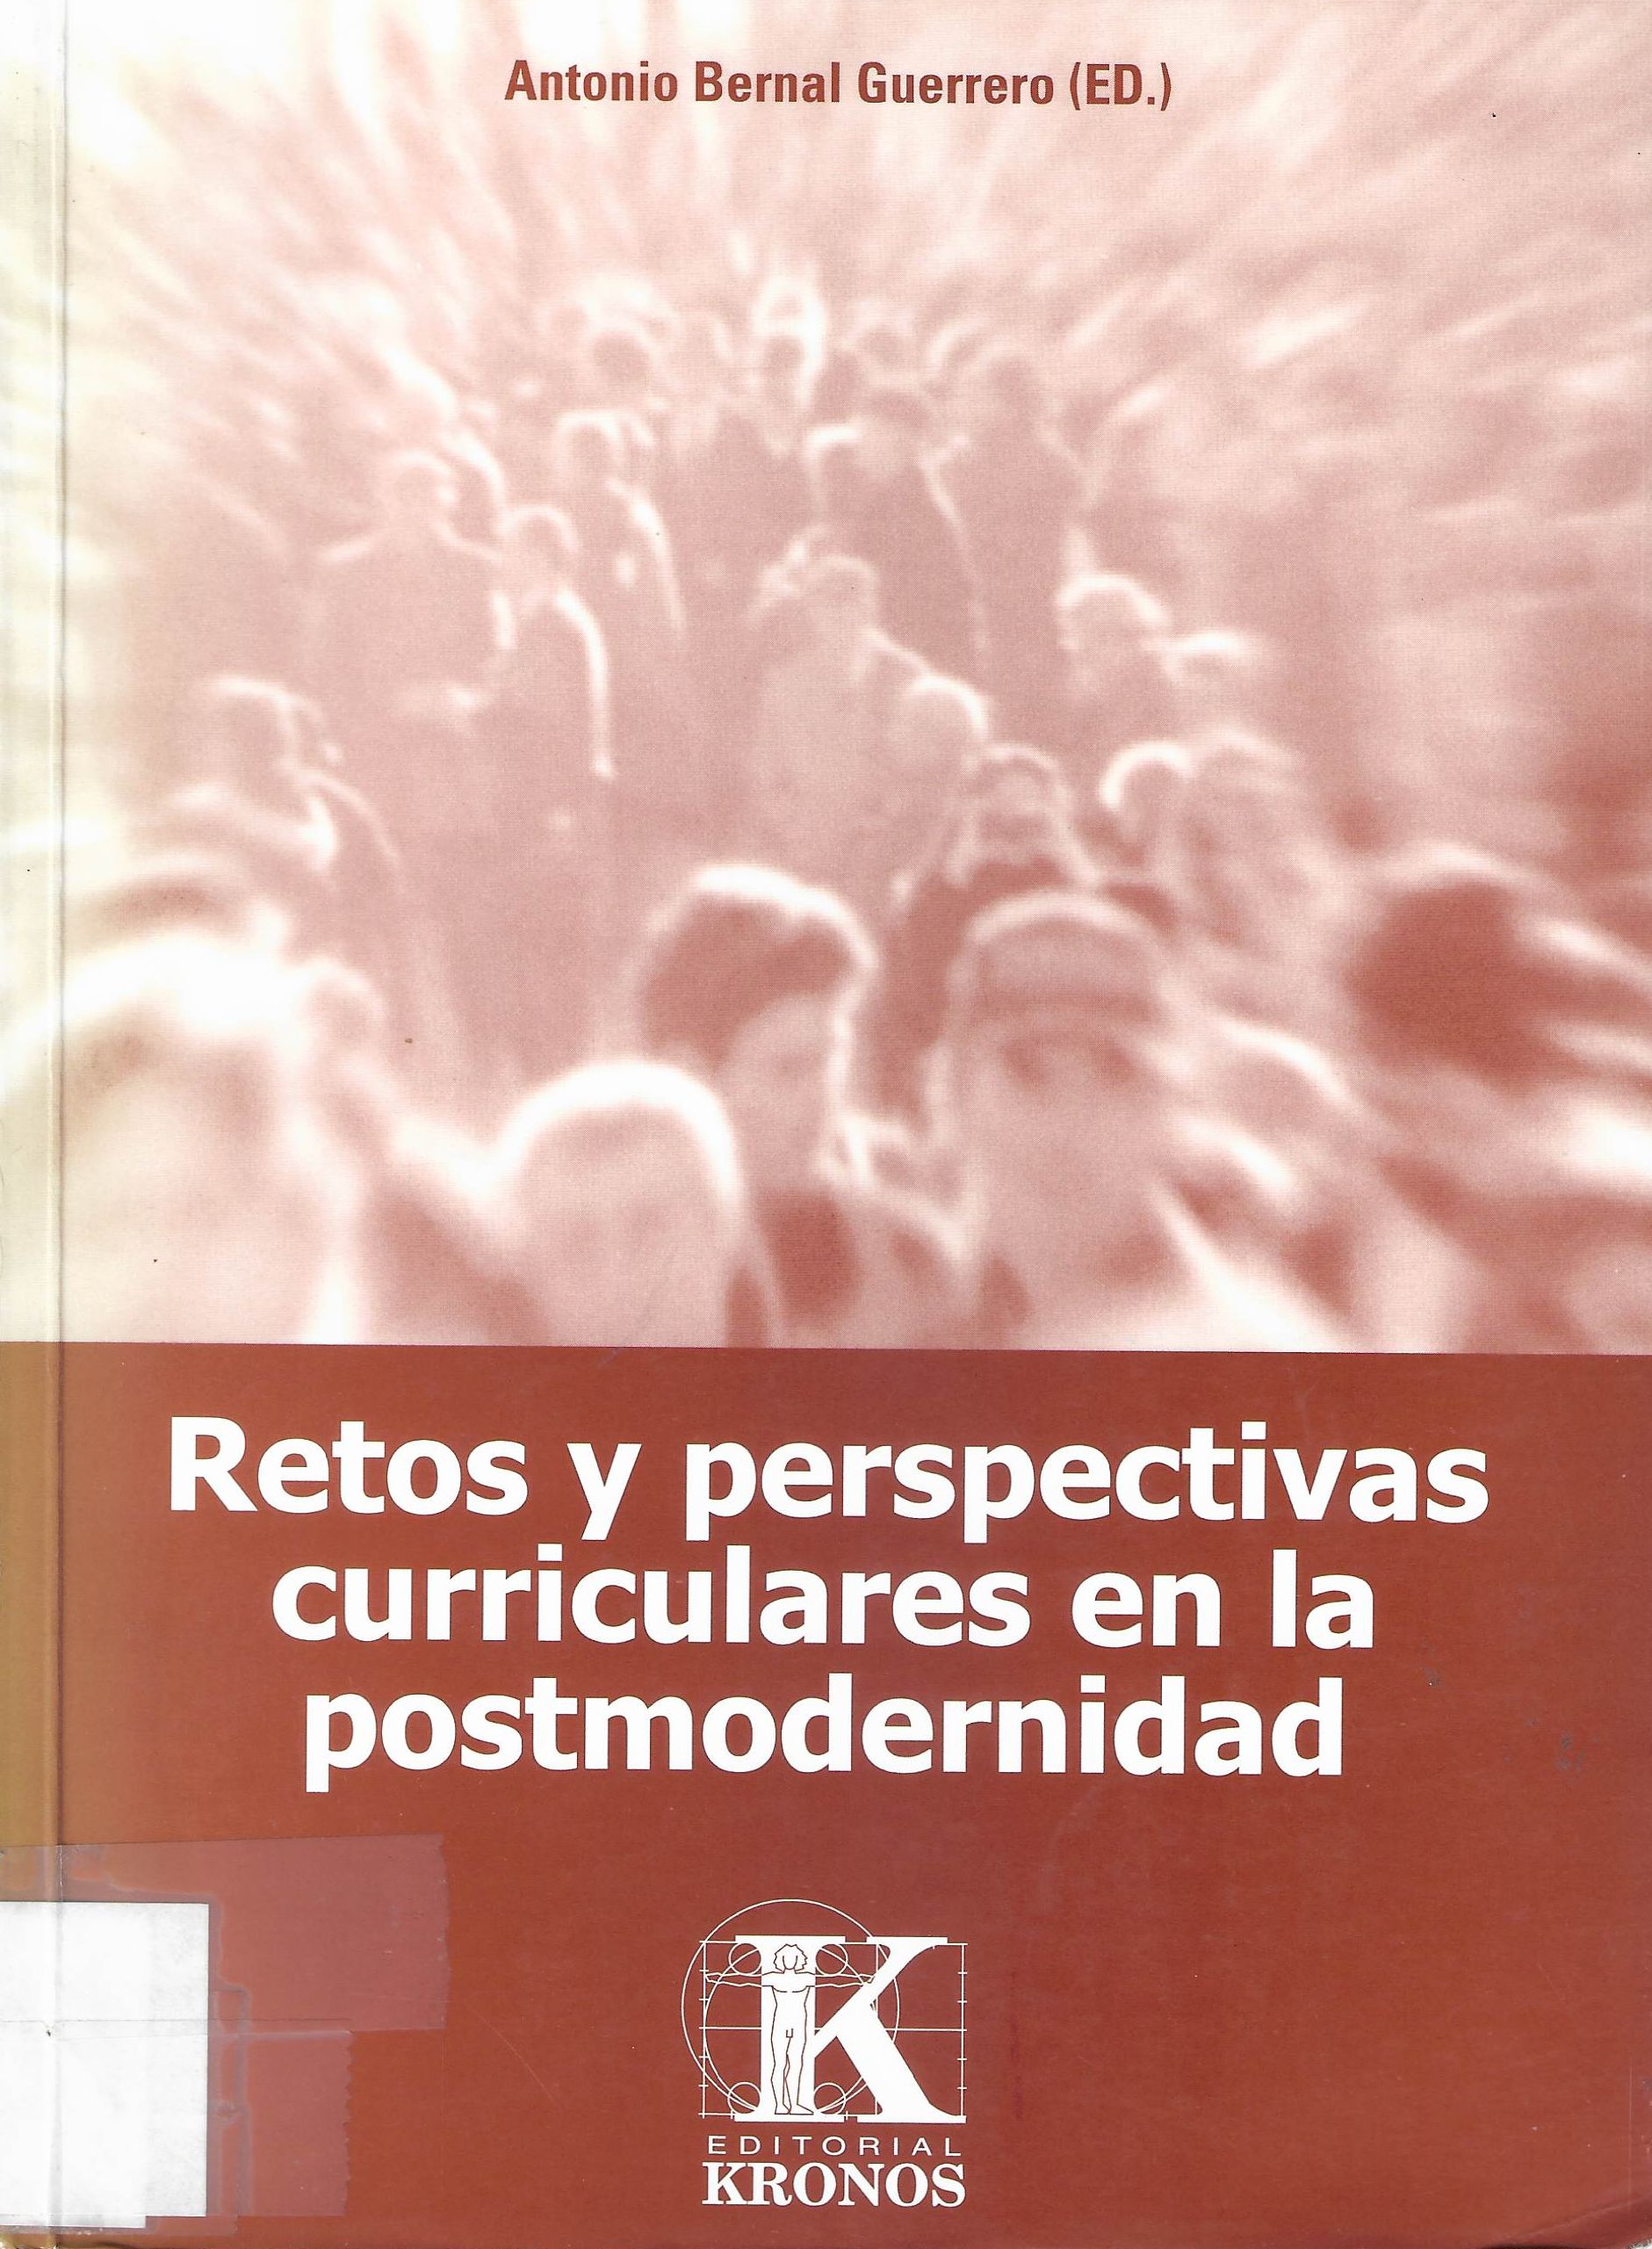 Imagen de portada del libro Retos y perspectivas curriculares en la postmodernidad